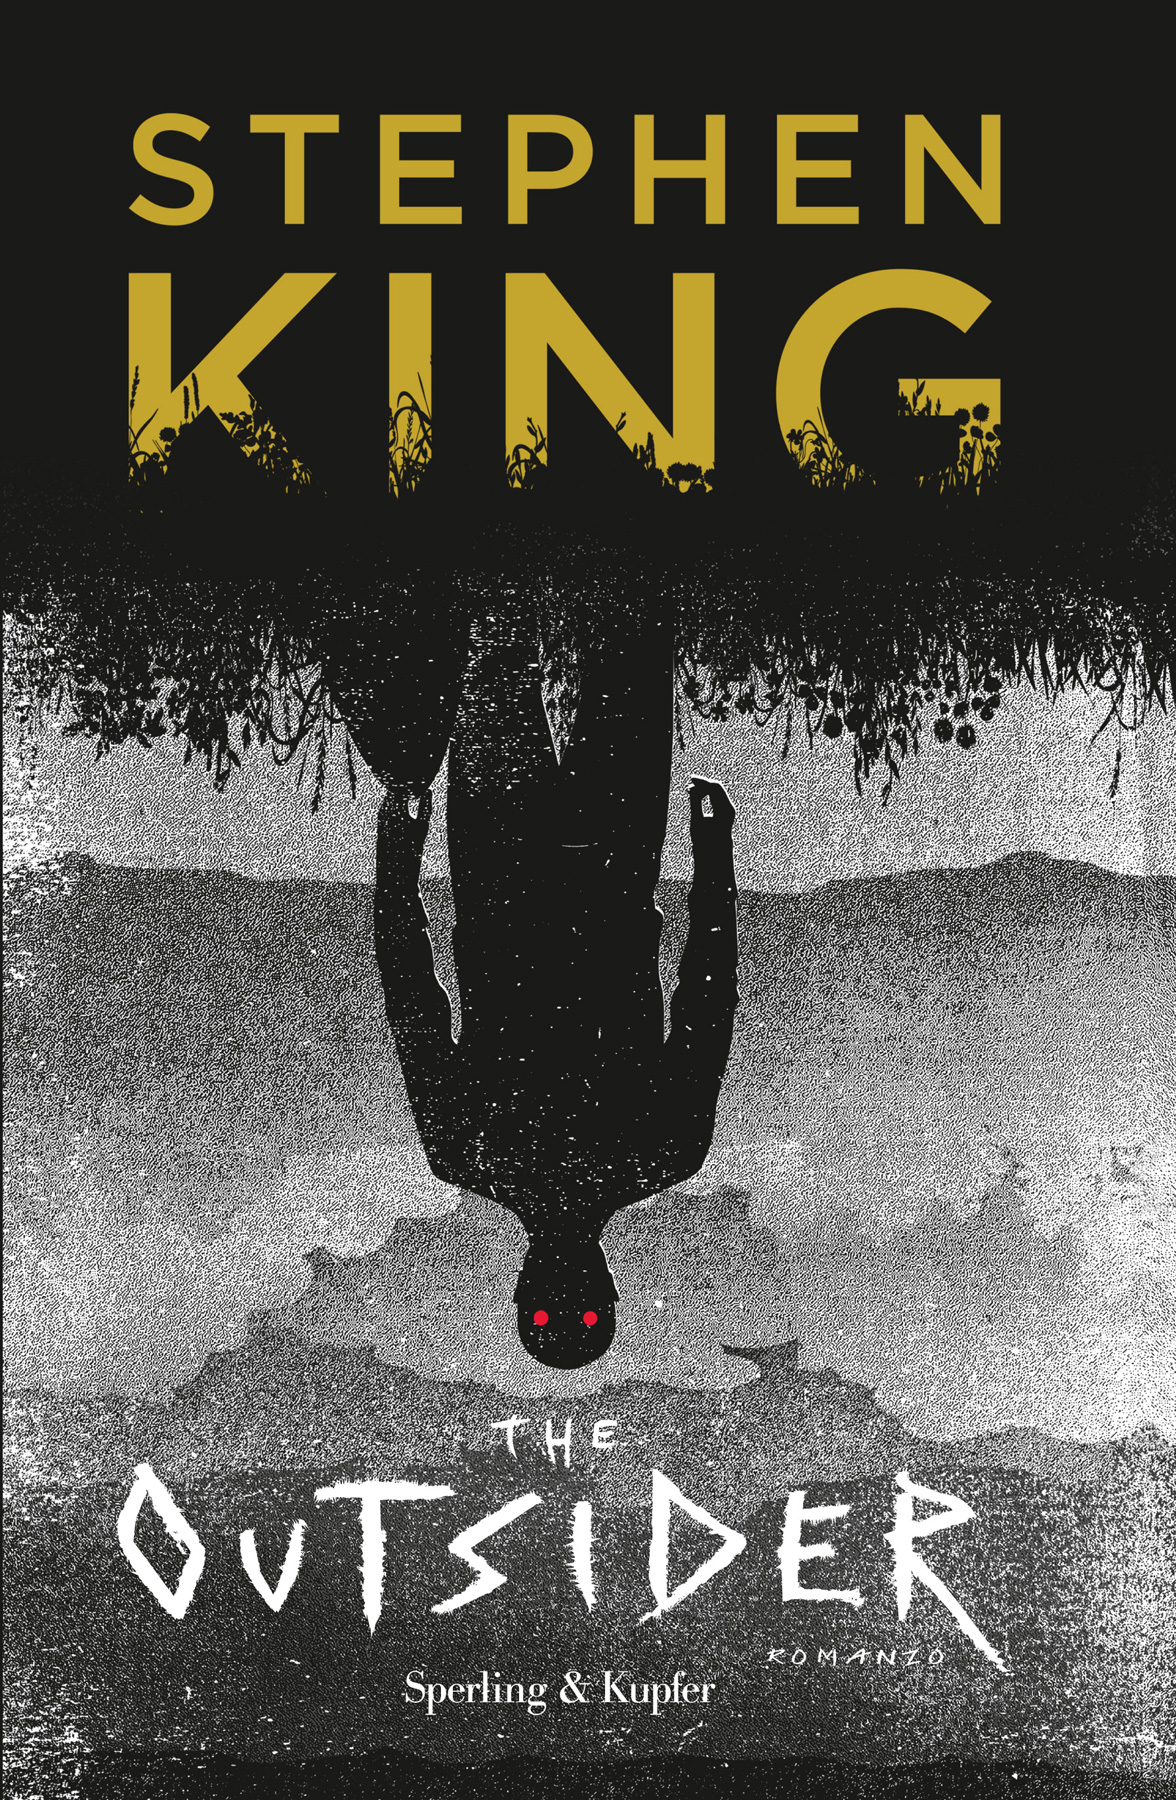 Cose preziose di Stephen King: un romanzo che scorre davanti agli occhi  come un film